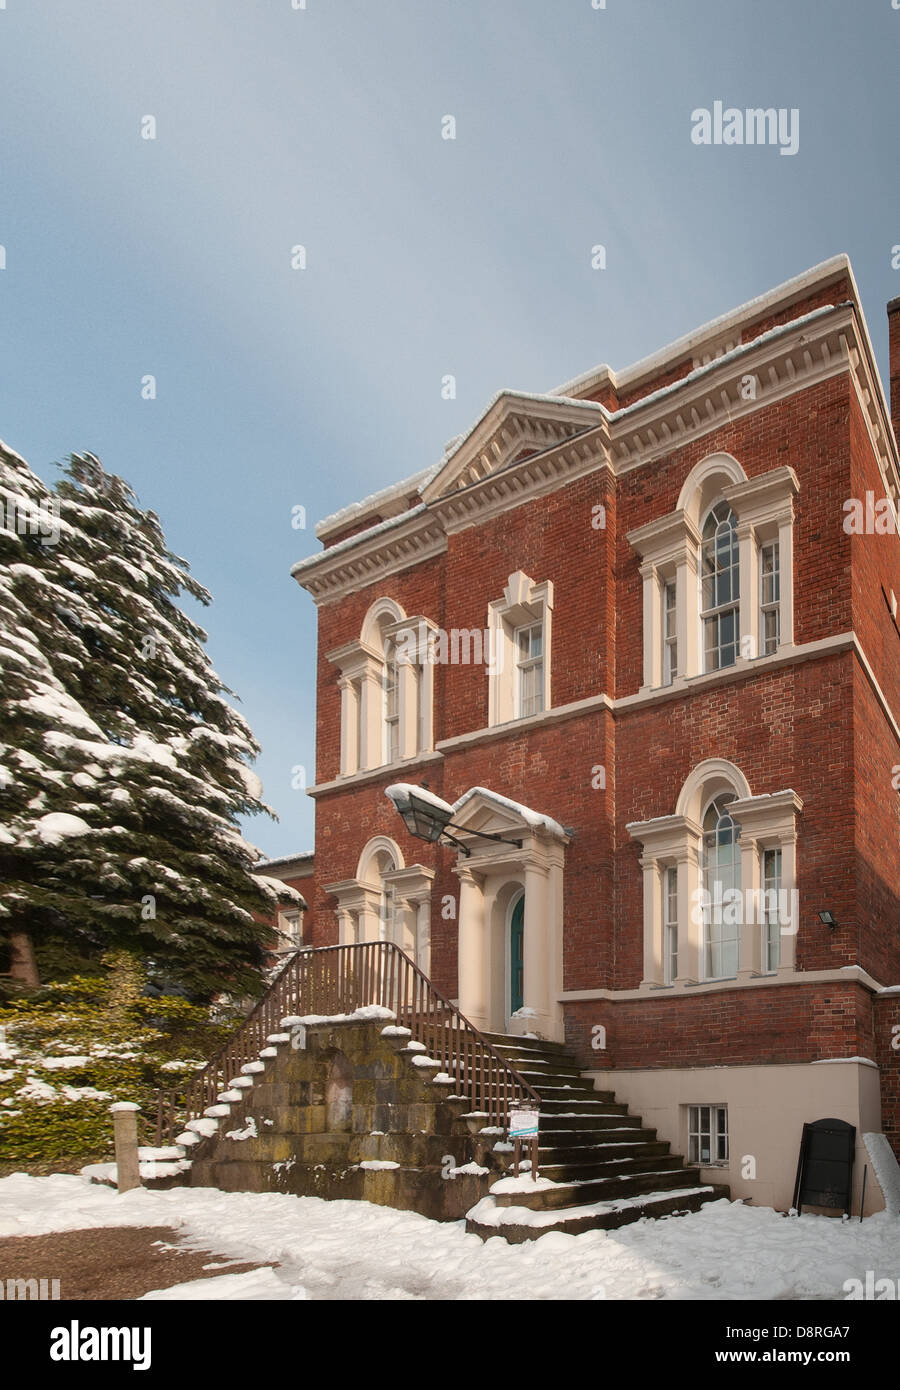 Erasmus Darwins Haus am Beacon Street Lichfield Staffordshire England im Winter mit Schnee auf dem Boden Stockfoto